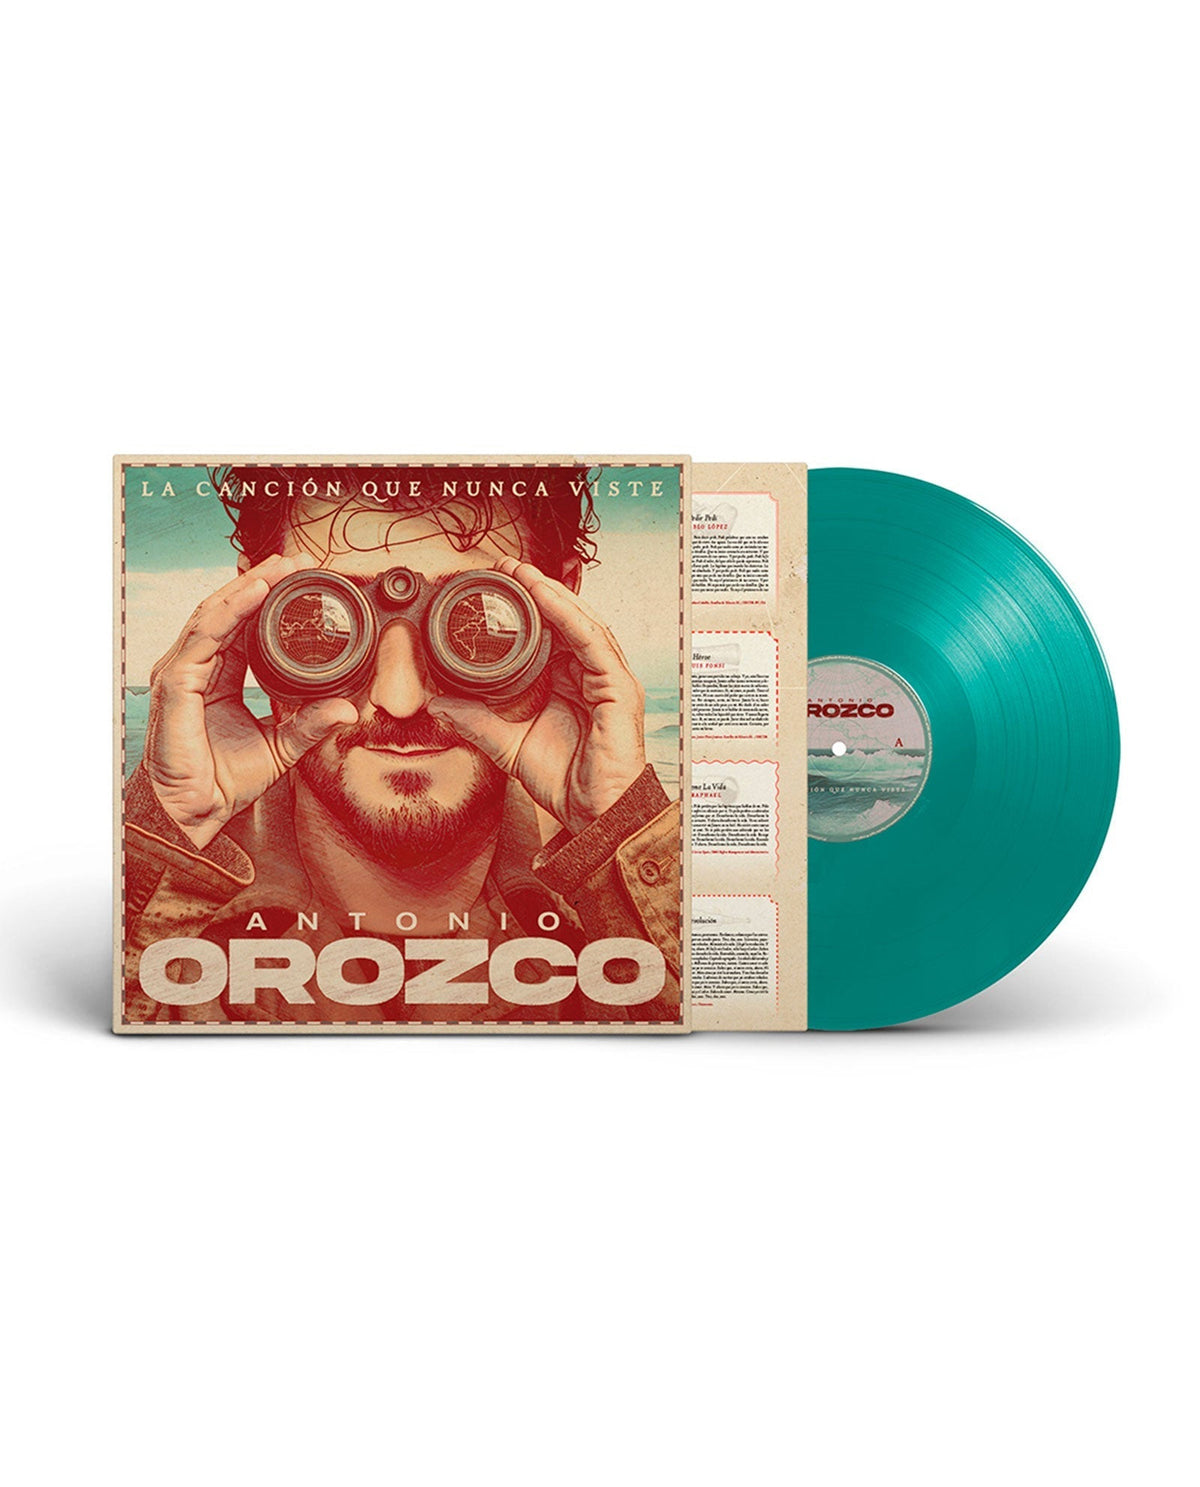 Antonio Orozco - LP Vinilo Firmado "La canción que nunca viste" - D2fy · Rocktud - D2fy